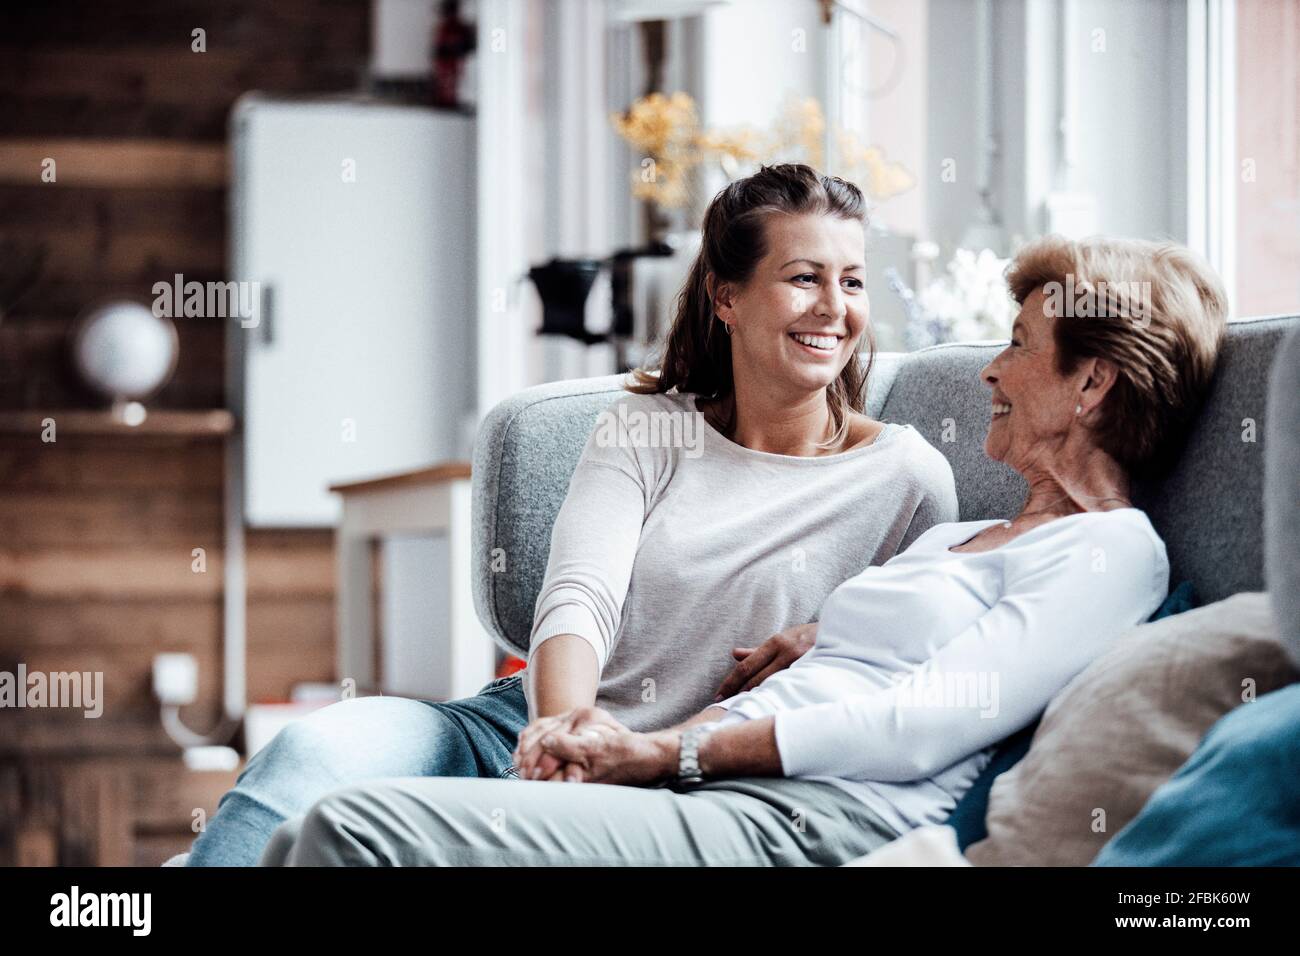 Lächelnde, schöne Frau, die die Hand der Großmutter hält, während sie auf dem Sofa sitzt Ein Zuhause Stockfoto